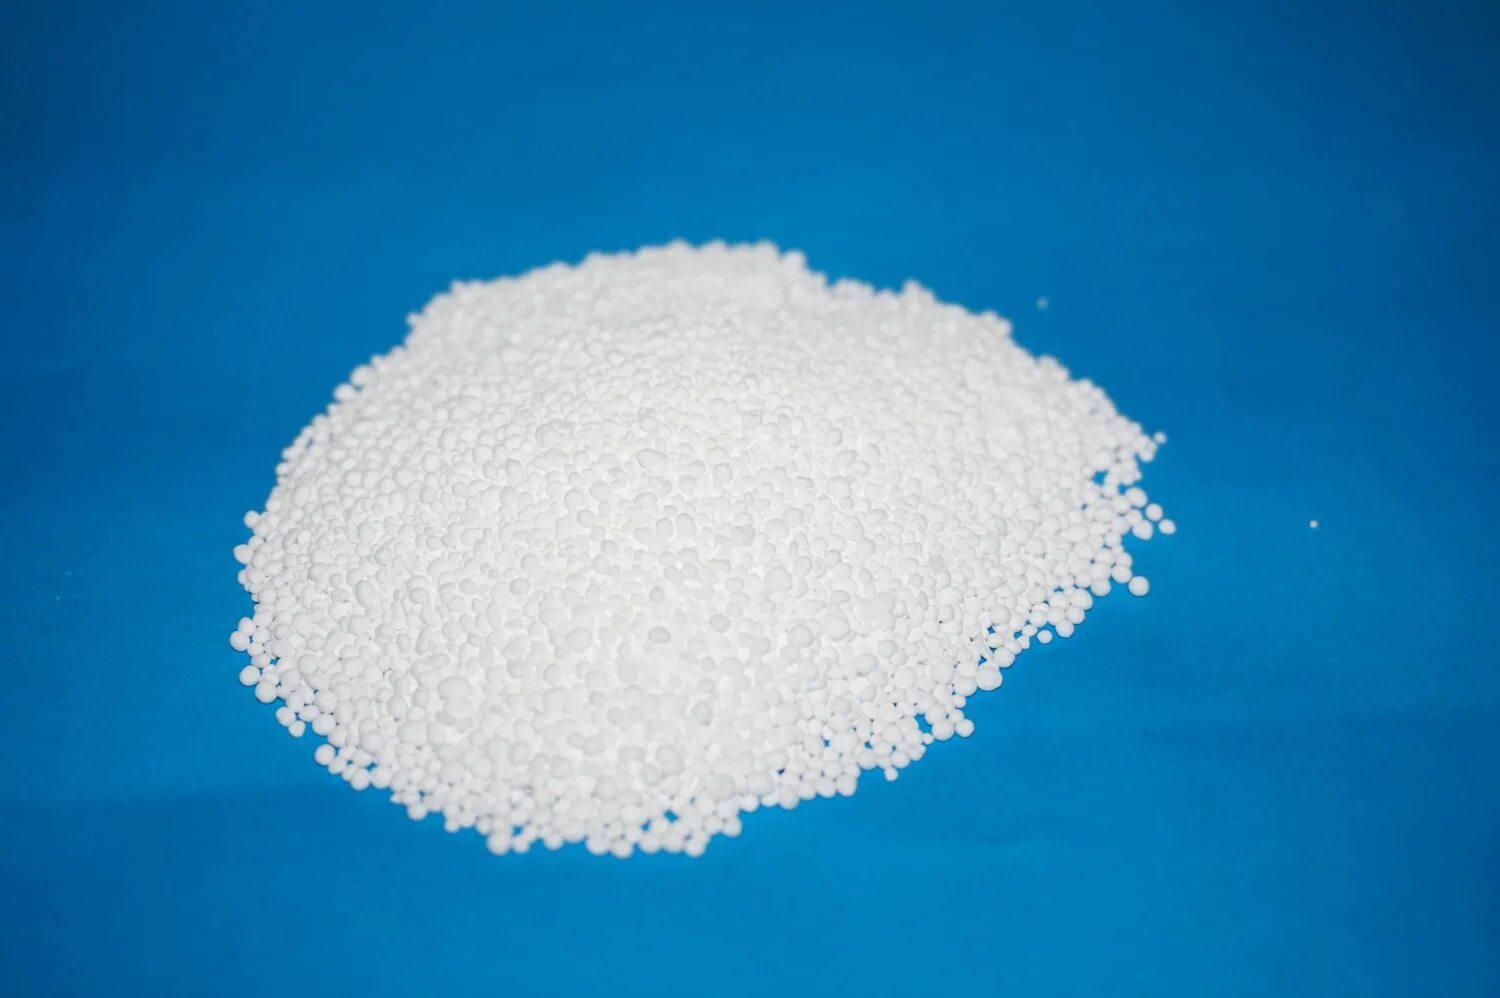 Лекарственная форма калия. Хлорид калия (е508). Белый хлористый калий. Potassium carbonate. Калий гранулированный.